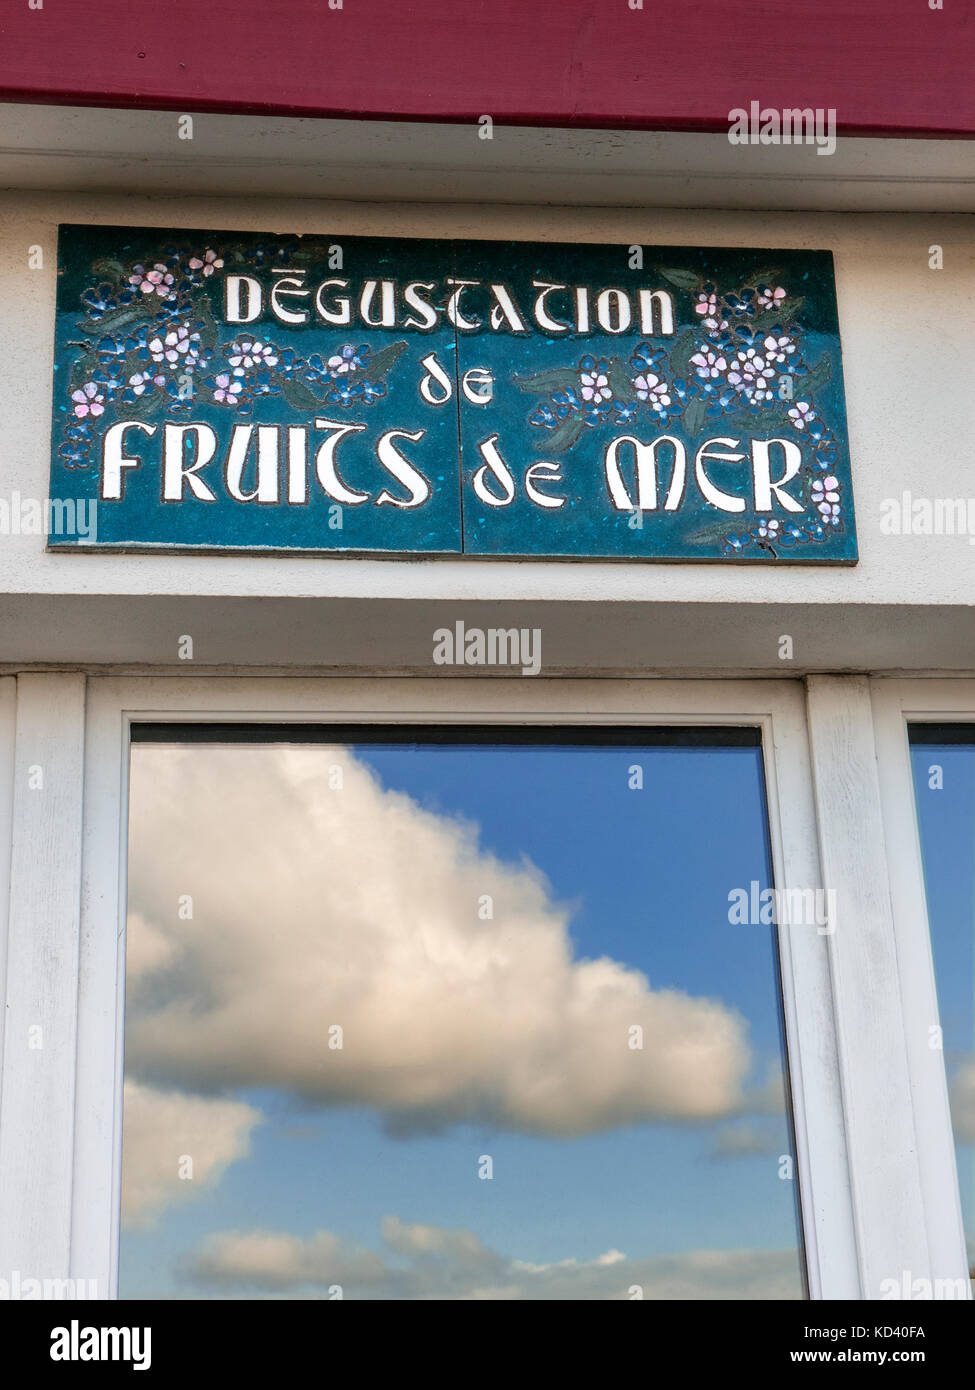 Rustico ristorante francese pubblicità segno 'degustation de fruits de mer" (degustazione dei frutti di mare) con l'azzurro del cielo e il porto si riflette nella finestra Foto Stock